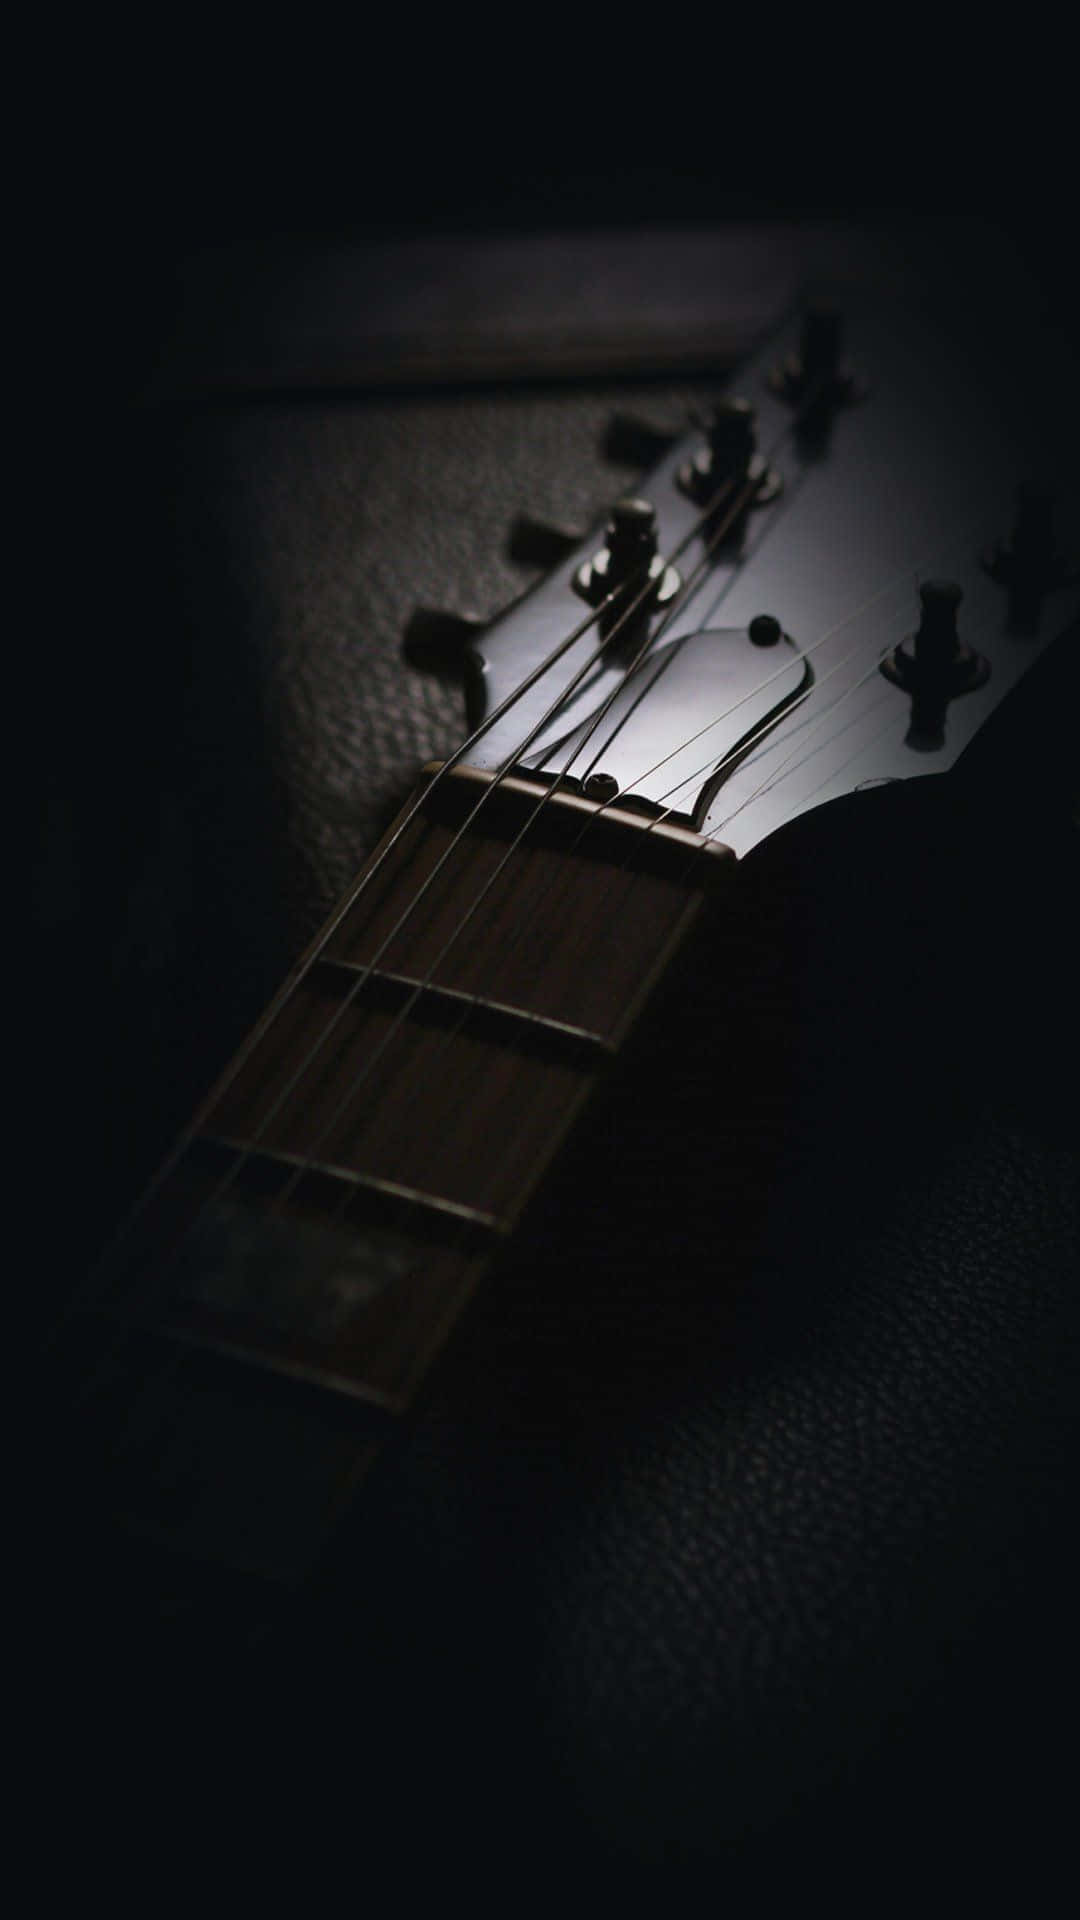 Dark Music Wallpaper on WallpaperSafari | Guitar wallpaper iphone, Music  wallpaper, Iphone music